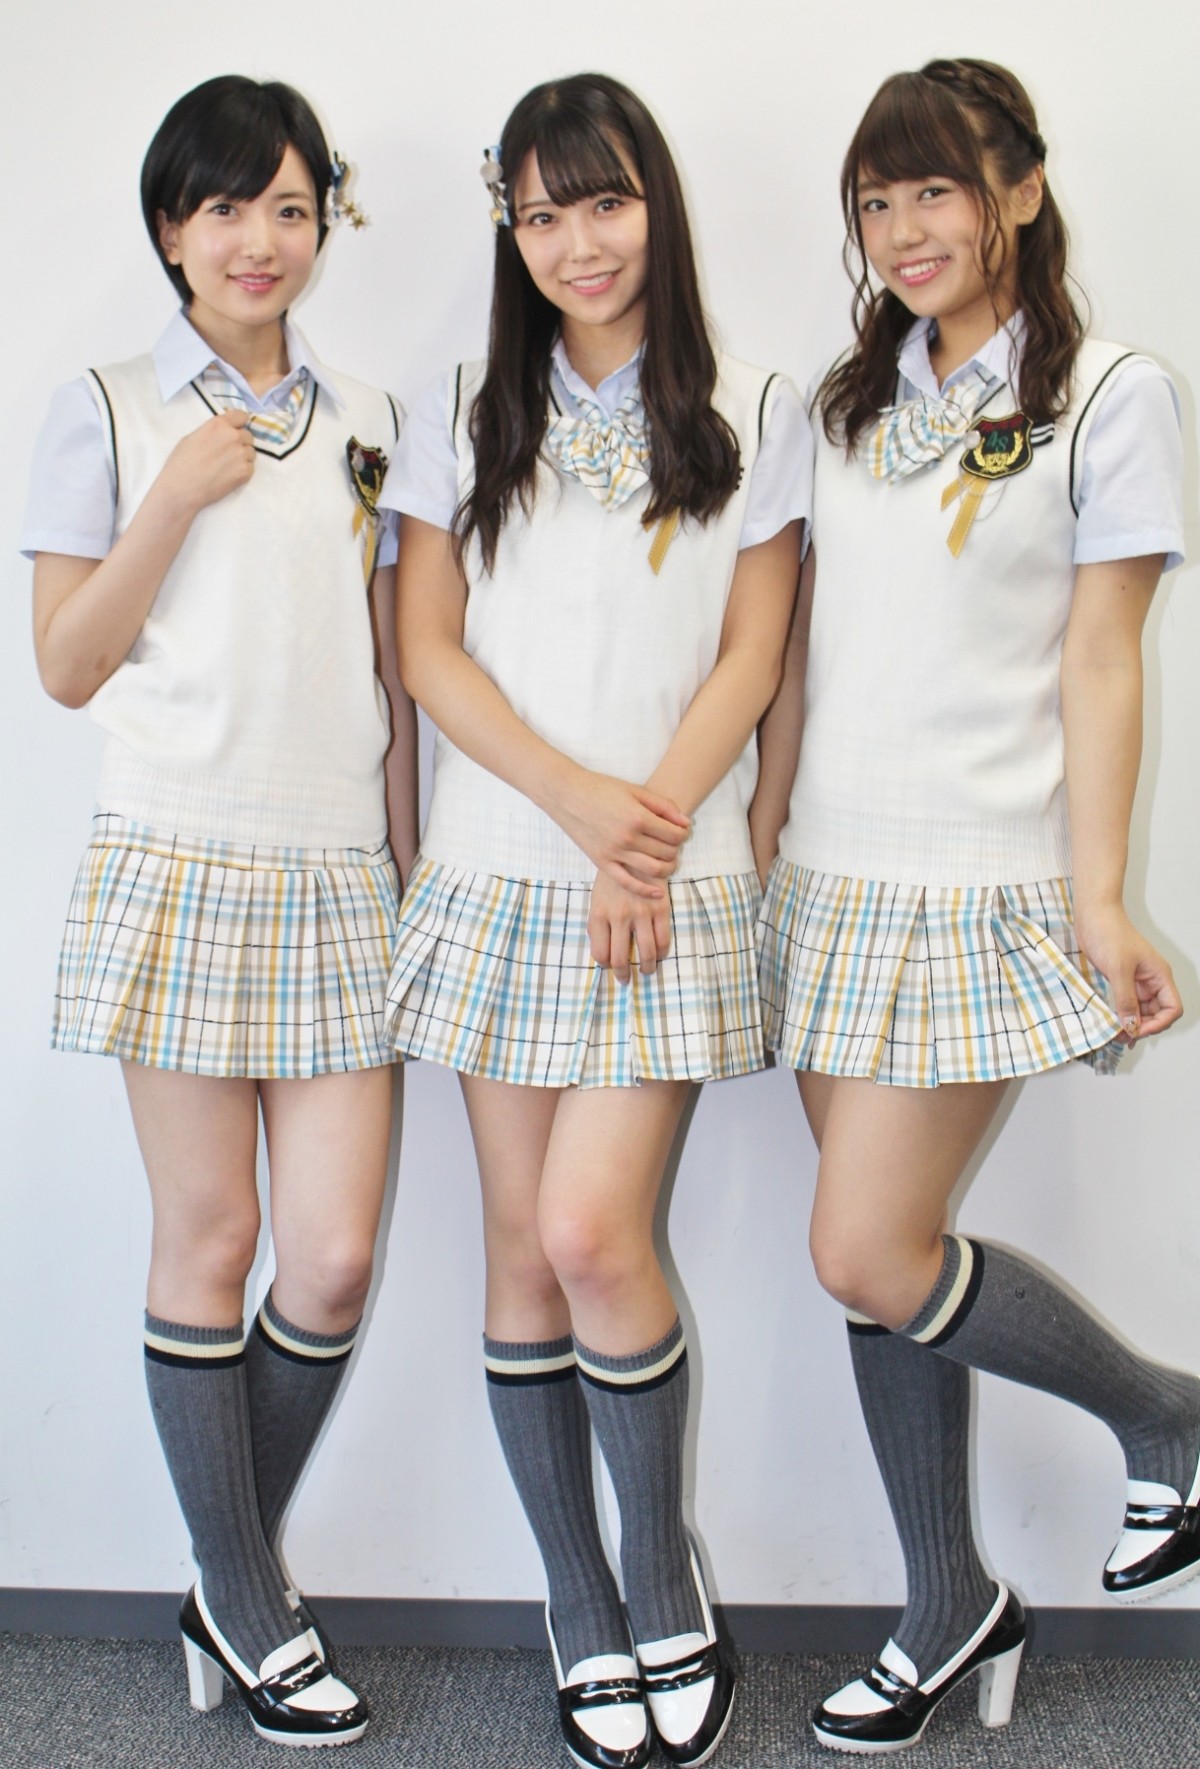 NMB48沖田彩華、“選抜”への思いを語る「さや姉に追いつきたい」